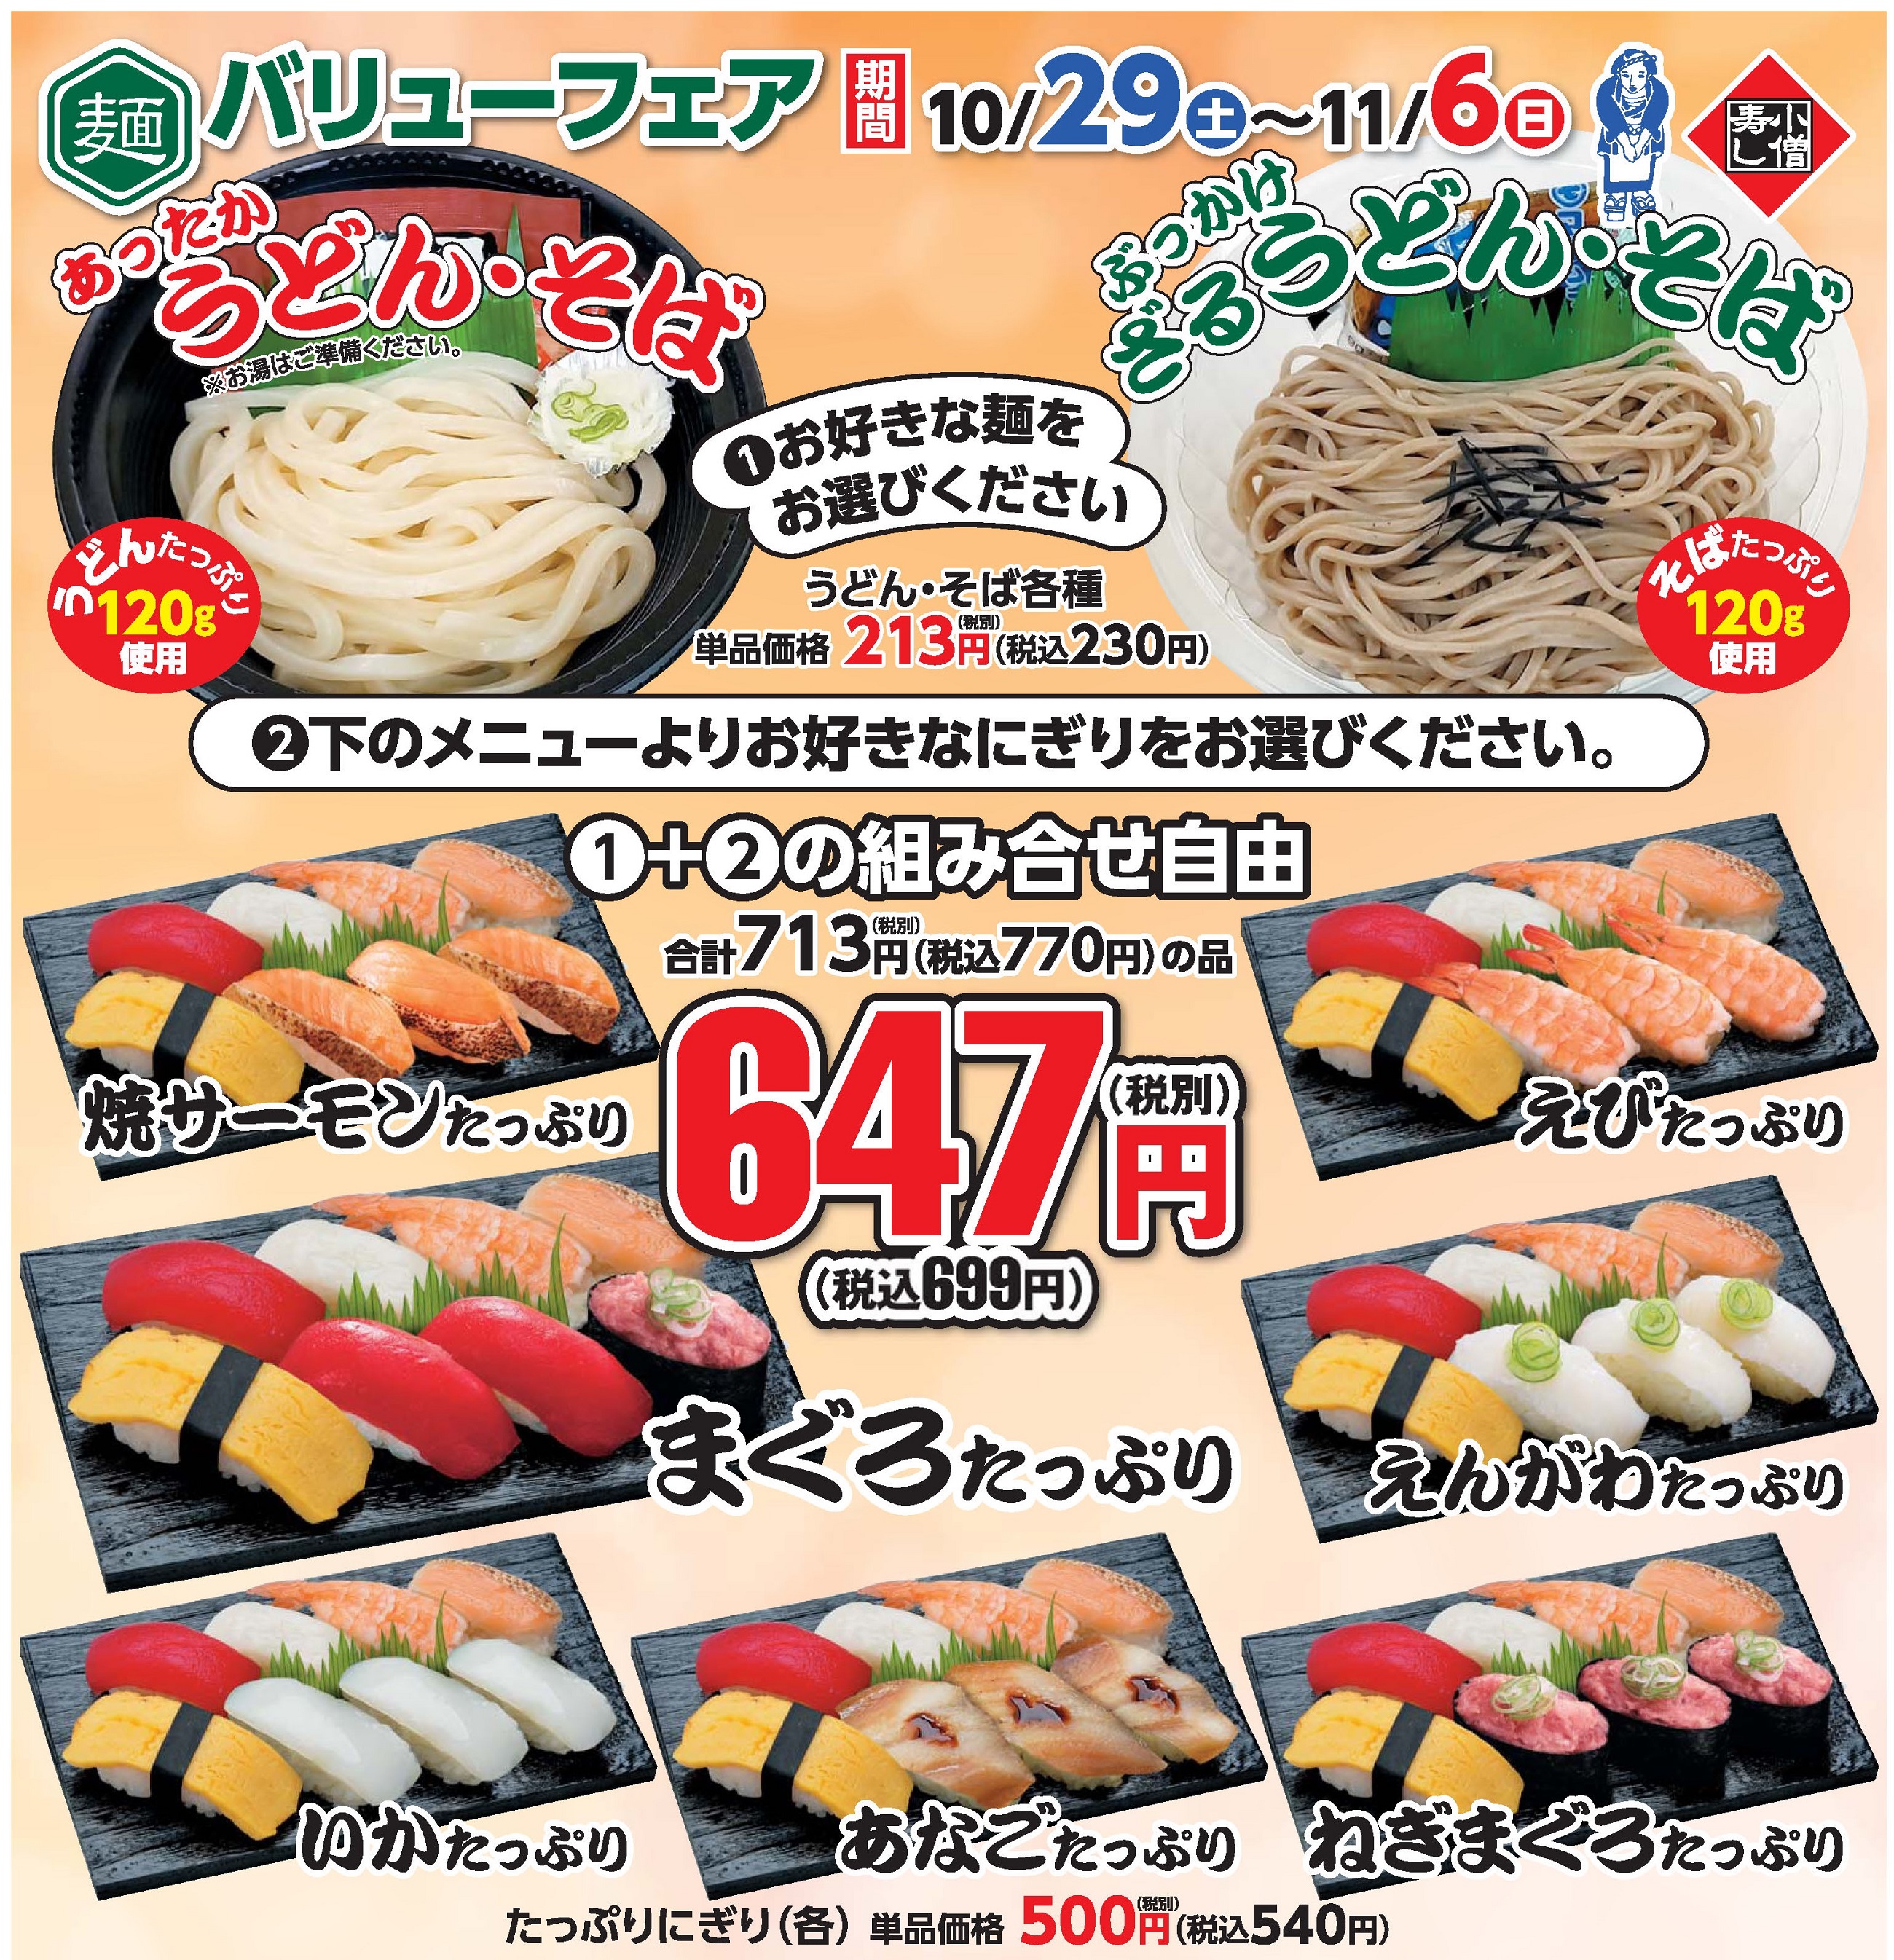 「麺」バリューフェア（期間限定）カワサキフードサービス